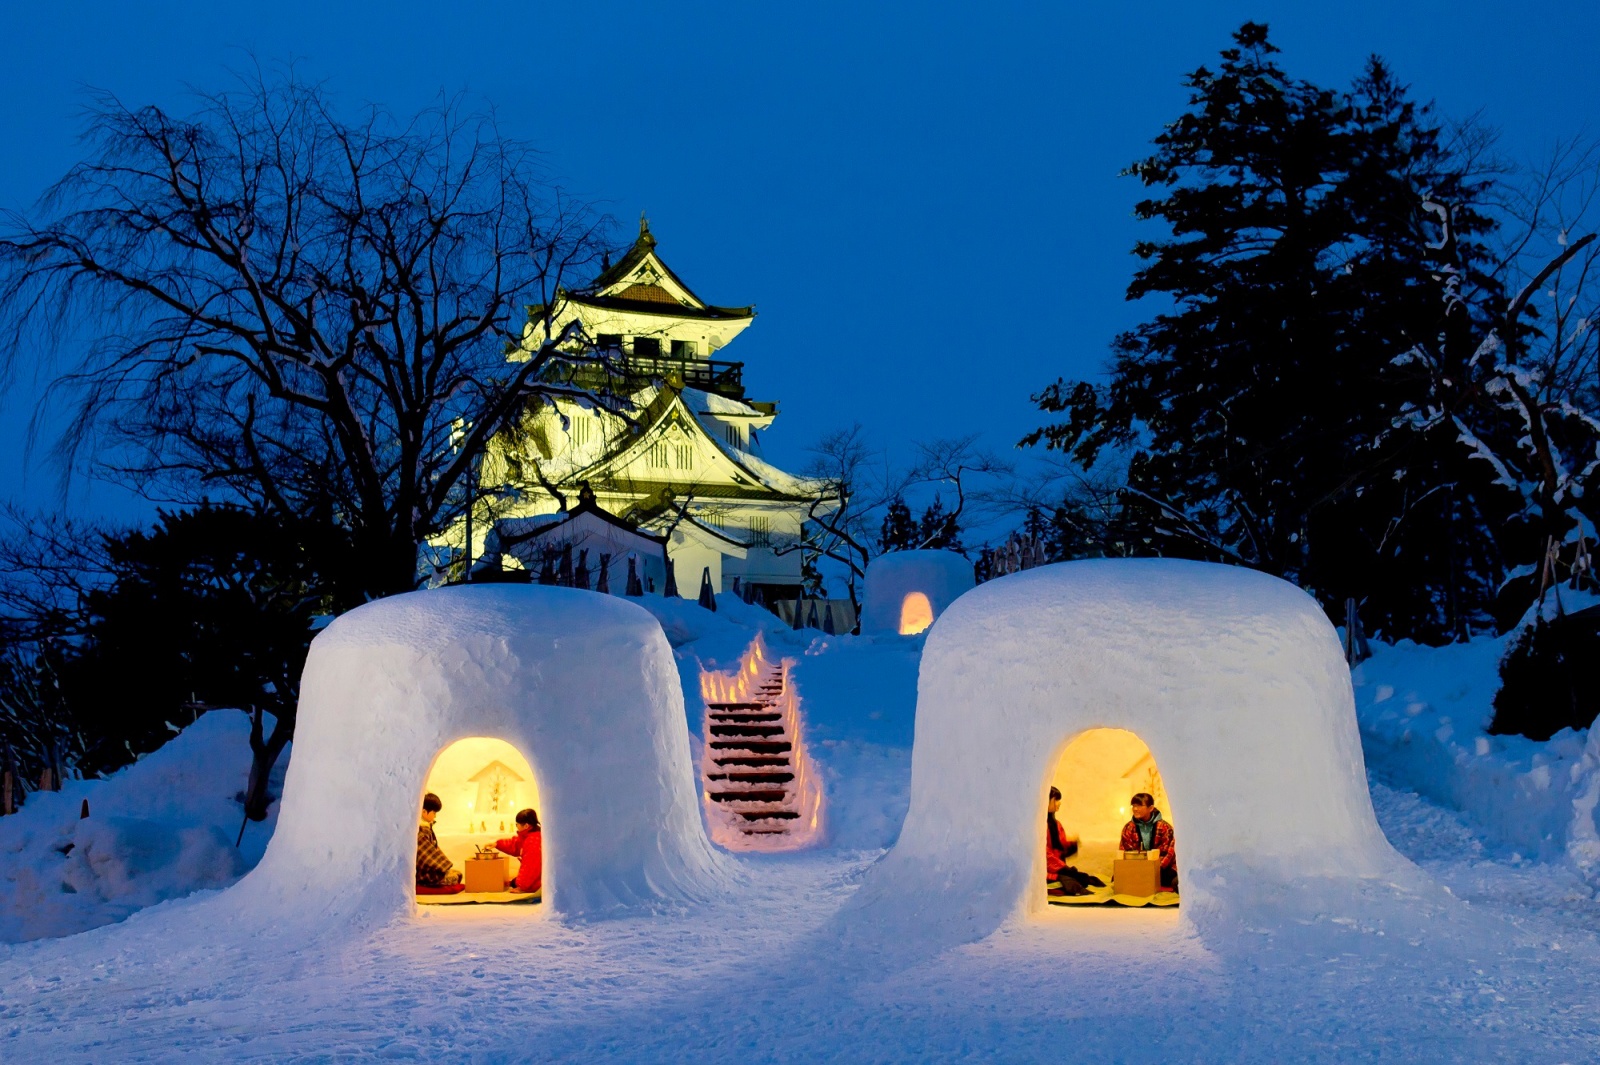 日本最北邊秋田縣 雪屋祭